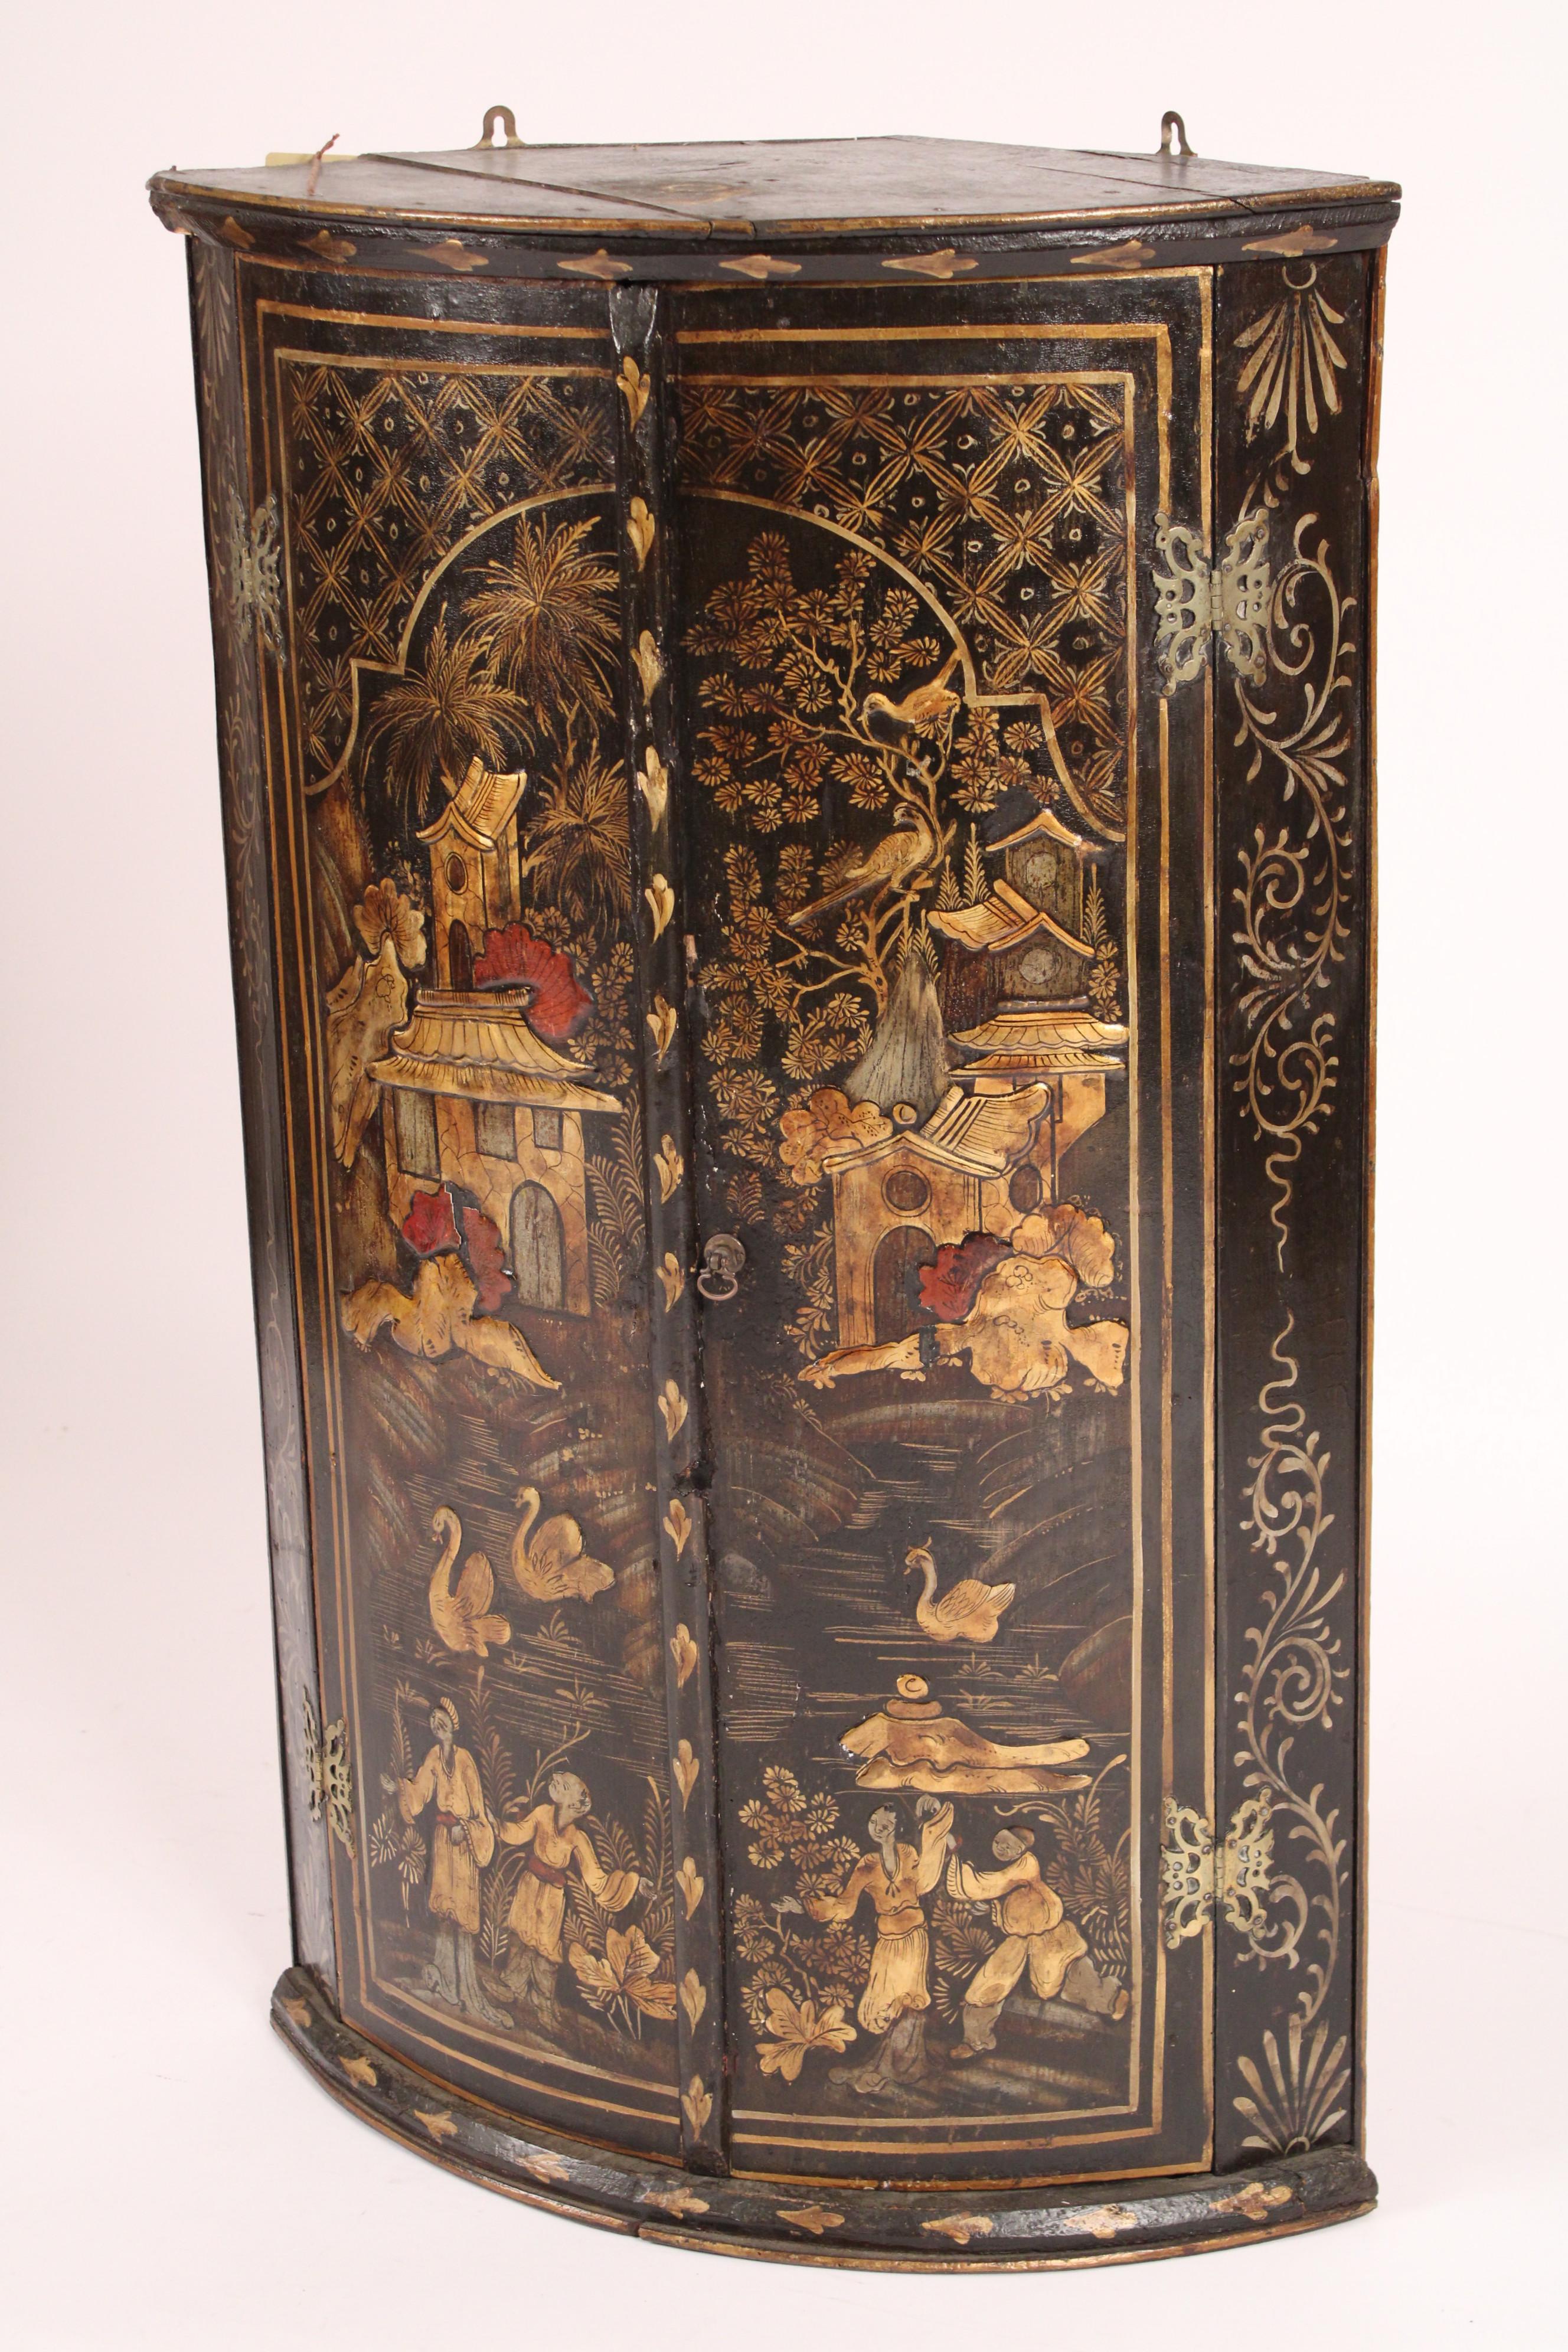 Armoire d'angle suspendue à décor de chinoiserie George III, fin du XVIIIe siècle. Les deux portes sont décorées de figures chinoises, de maisons de thé, de cygnes et d'oiseaux. Le décor de la chinoiserie est en relief et non plat.